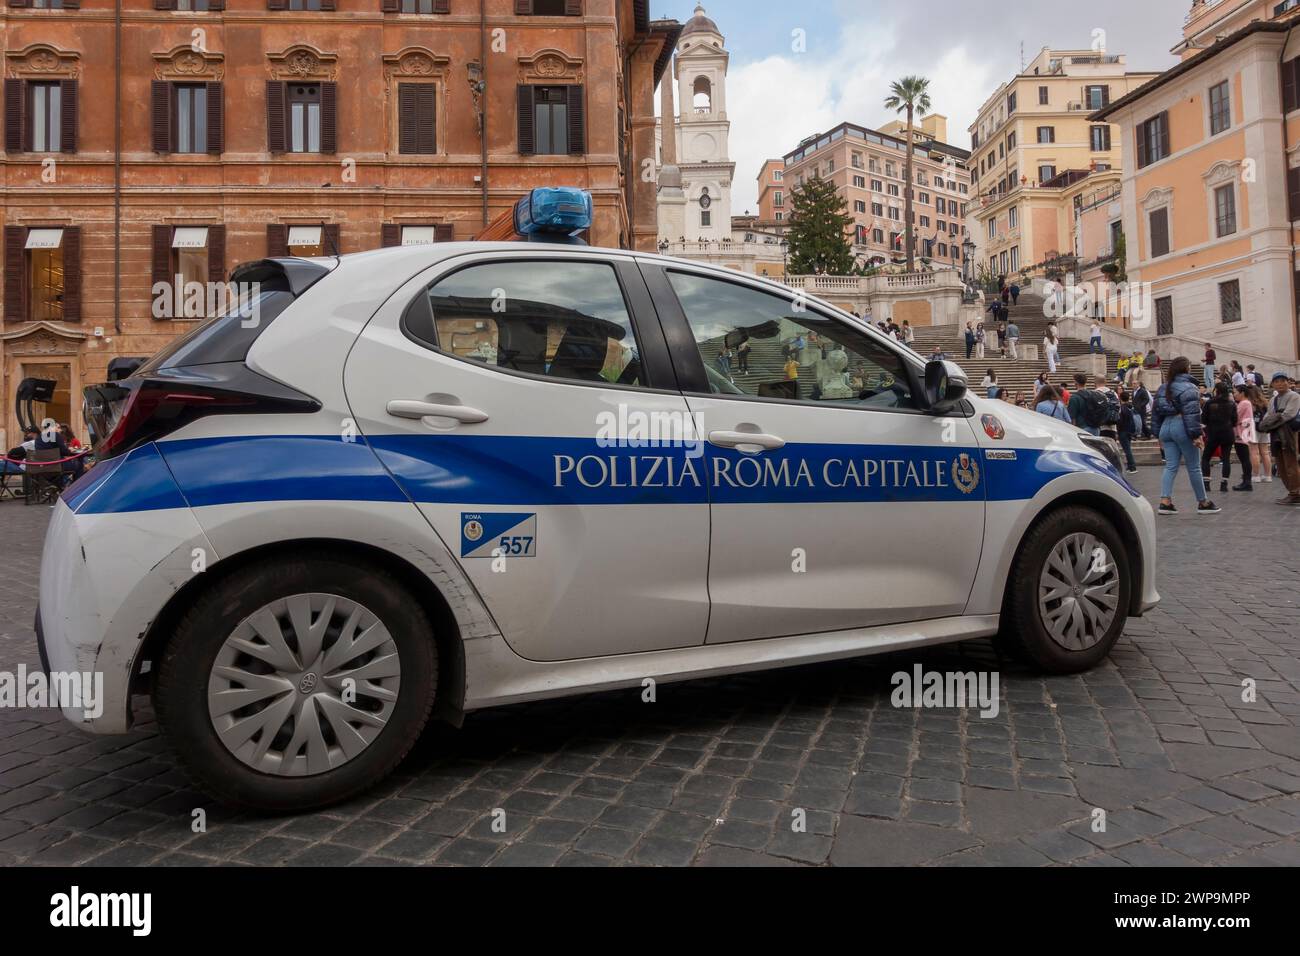 Polizia Roma Capitale (Stadtpolizei), weißes Auto auf der Piazza di Spagna, in der Nähe der Spanischen Treppe, Trinnità dei Monti. Rom, Italien, Europa, EU Stockfoto